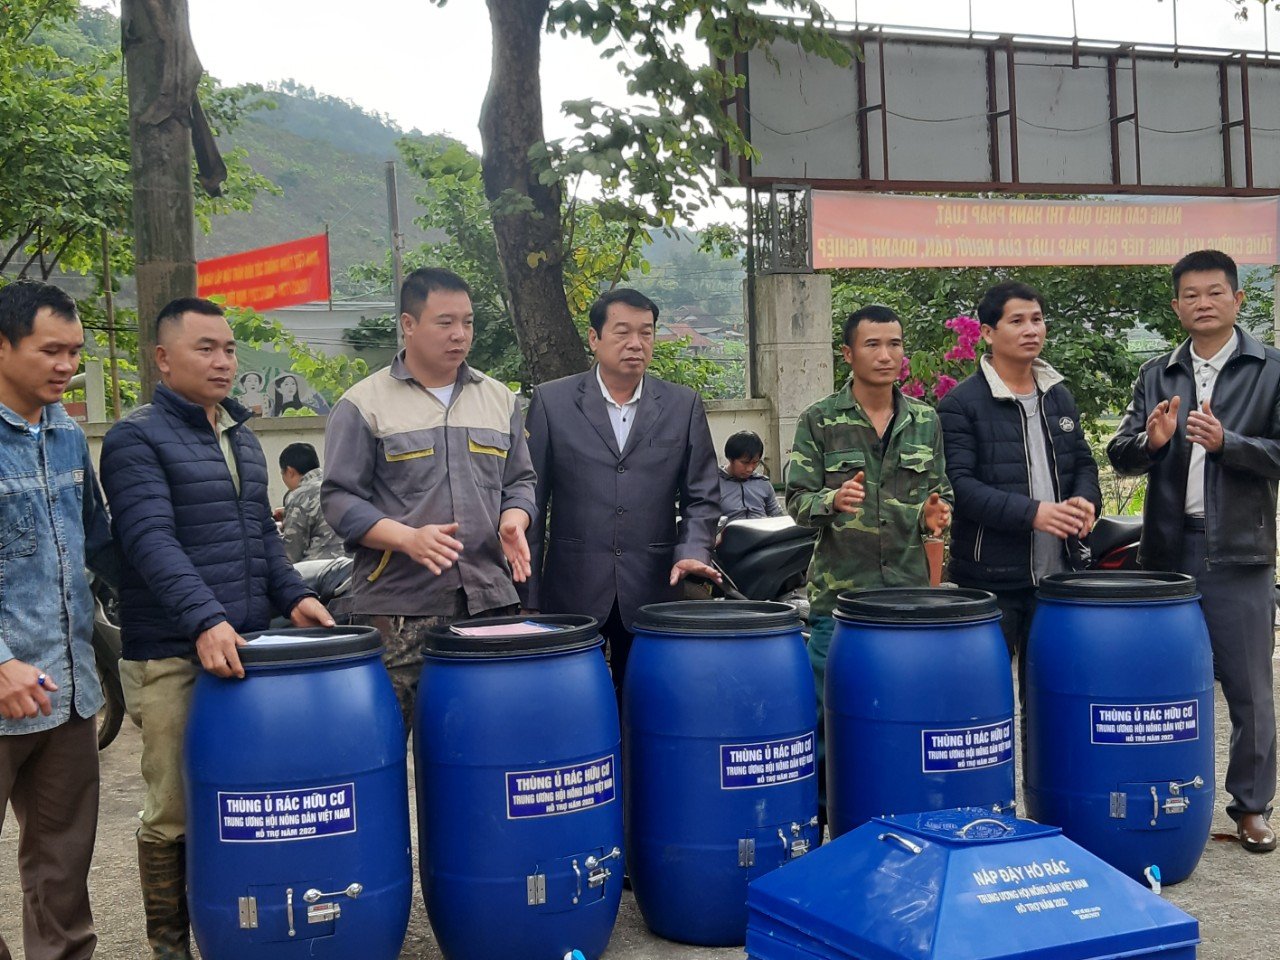 T.Ư Hội NDVN hỗ trợ 600 nông dân Sơn La tham gia mô hình xử lý rác thải sinh hoạt hữu cơ thành phân bón - Ảnh 4.